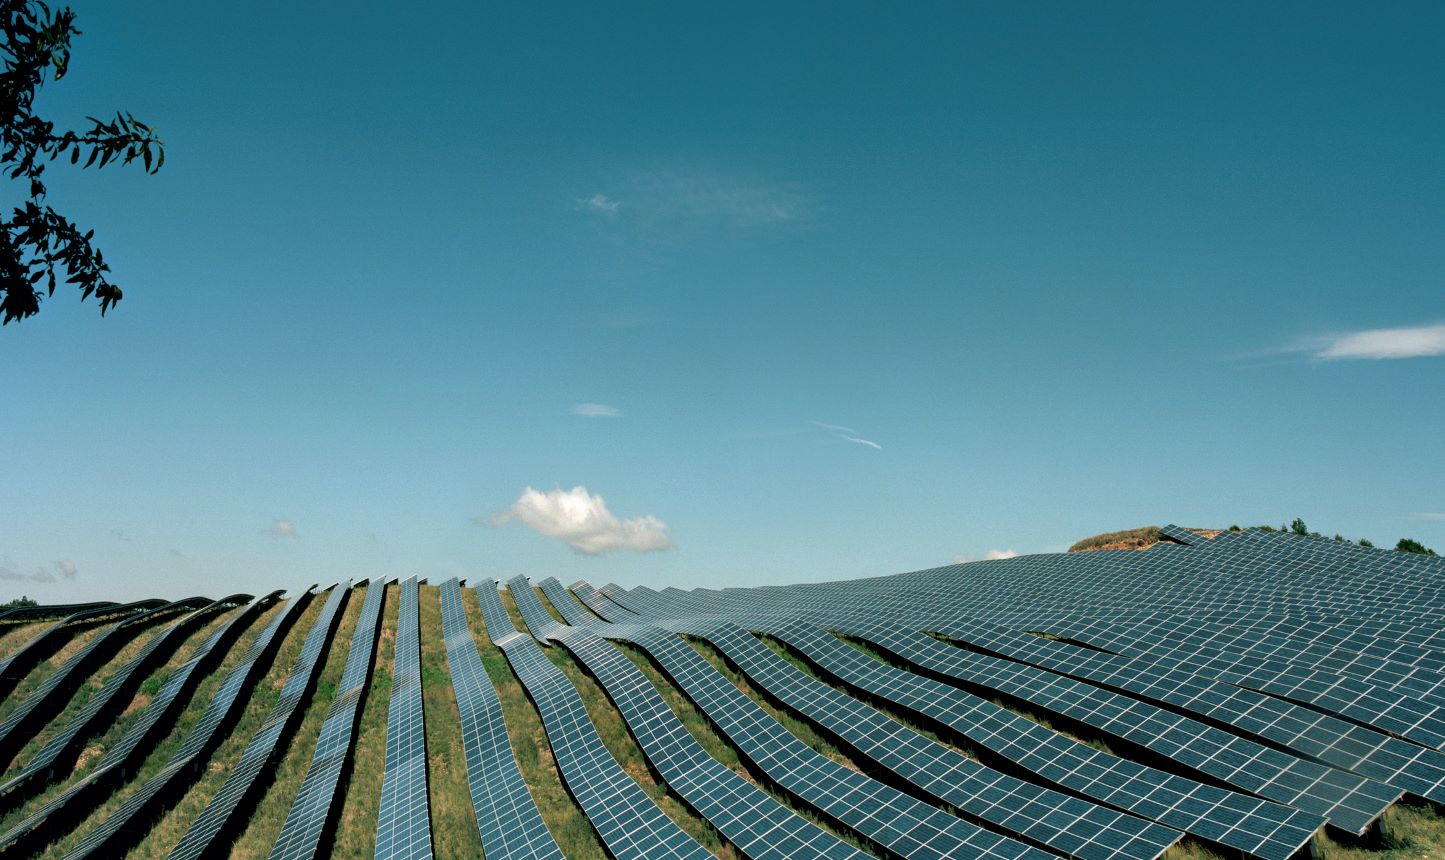 Pannelli solari, la perovskite potrebbe migliorarne le prestazioni persino in ambienti chiusi e su ogni superficie